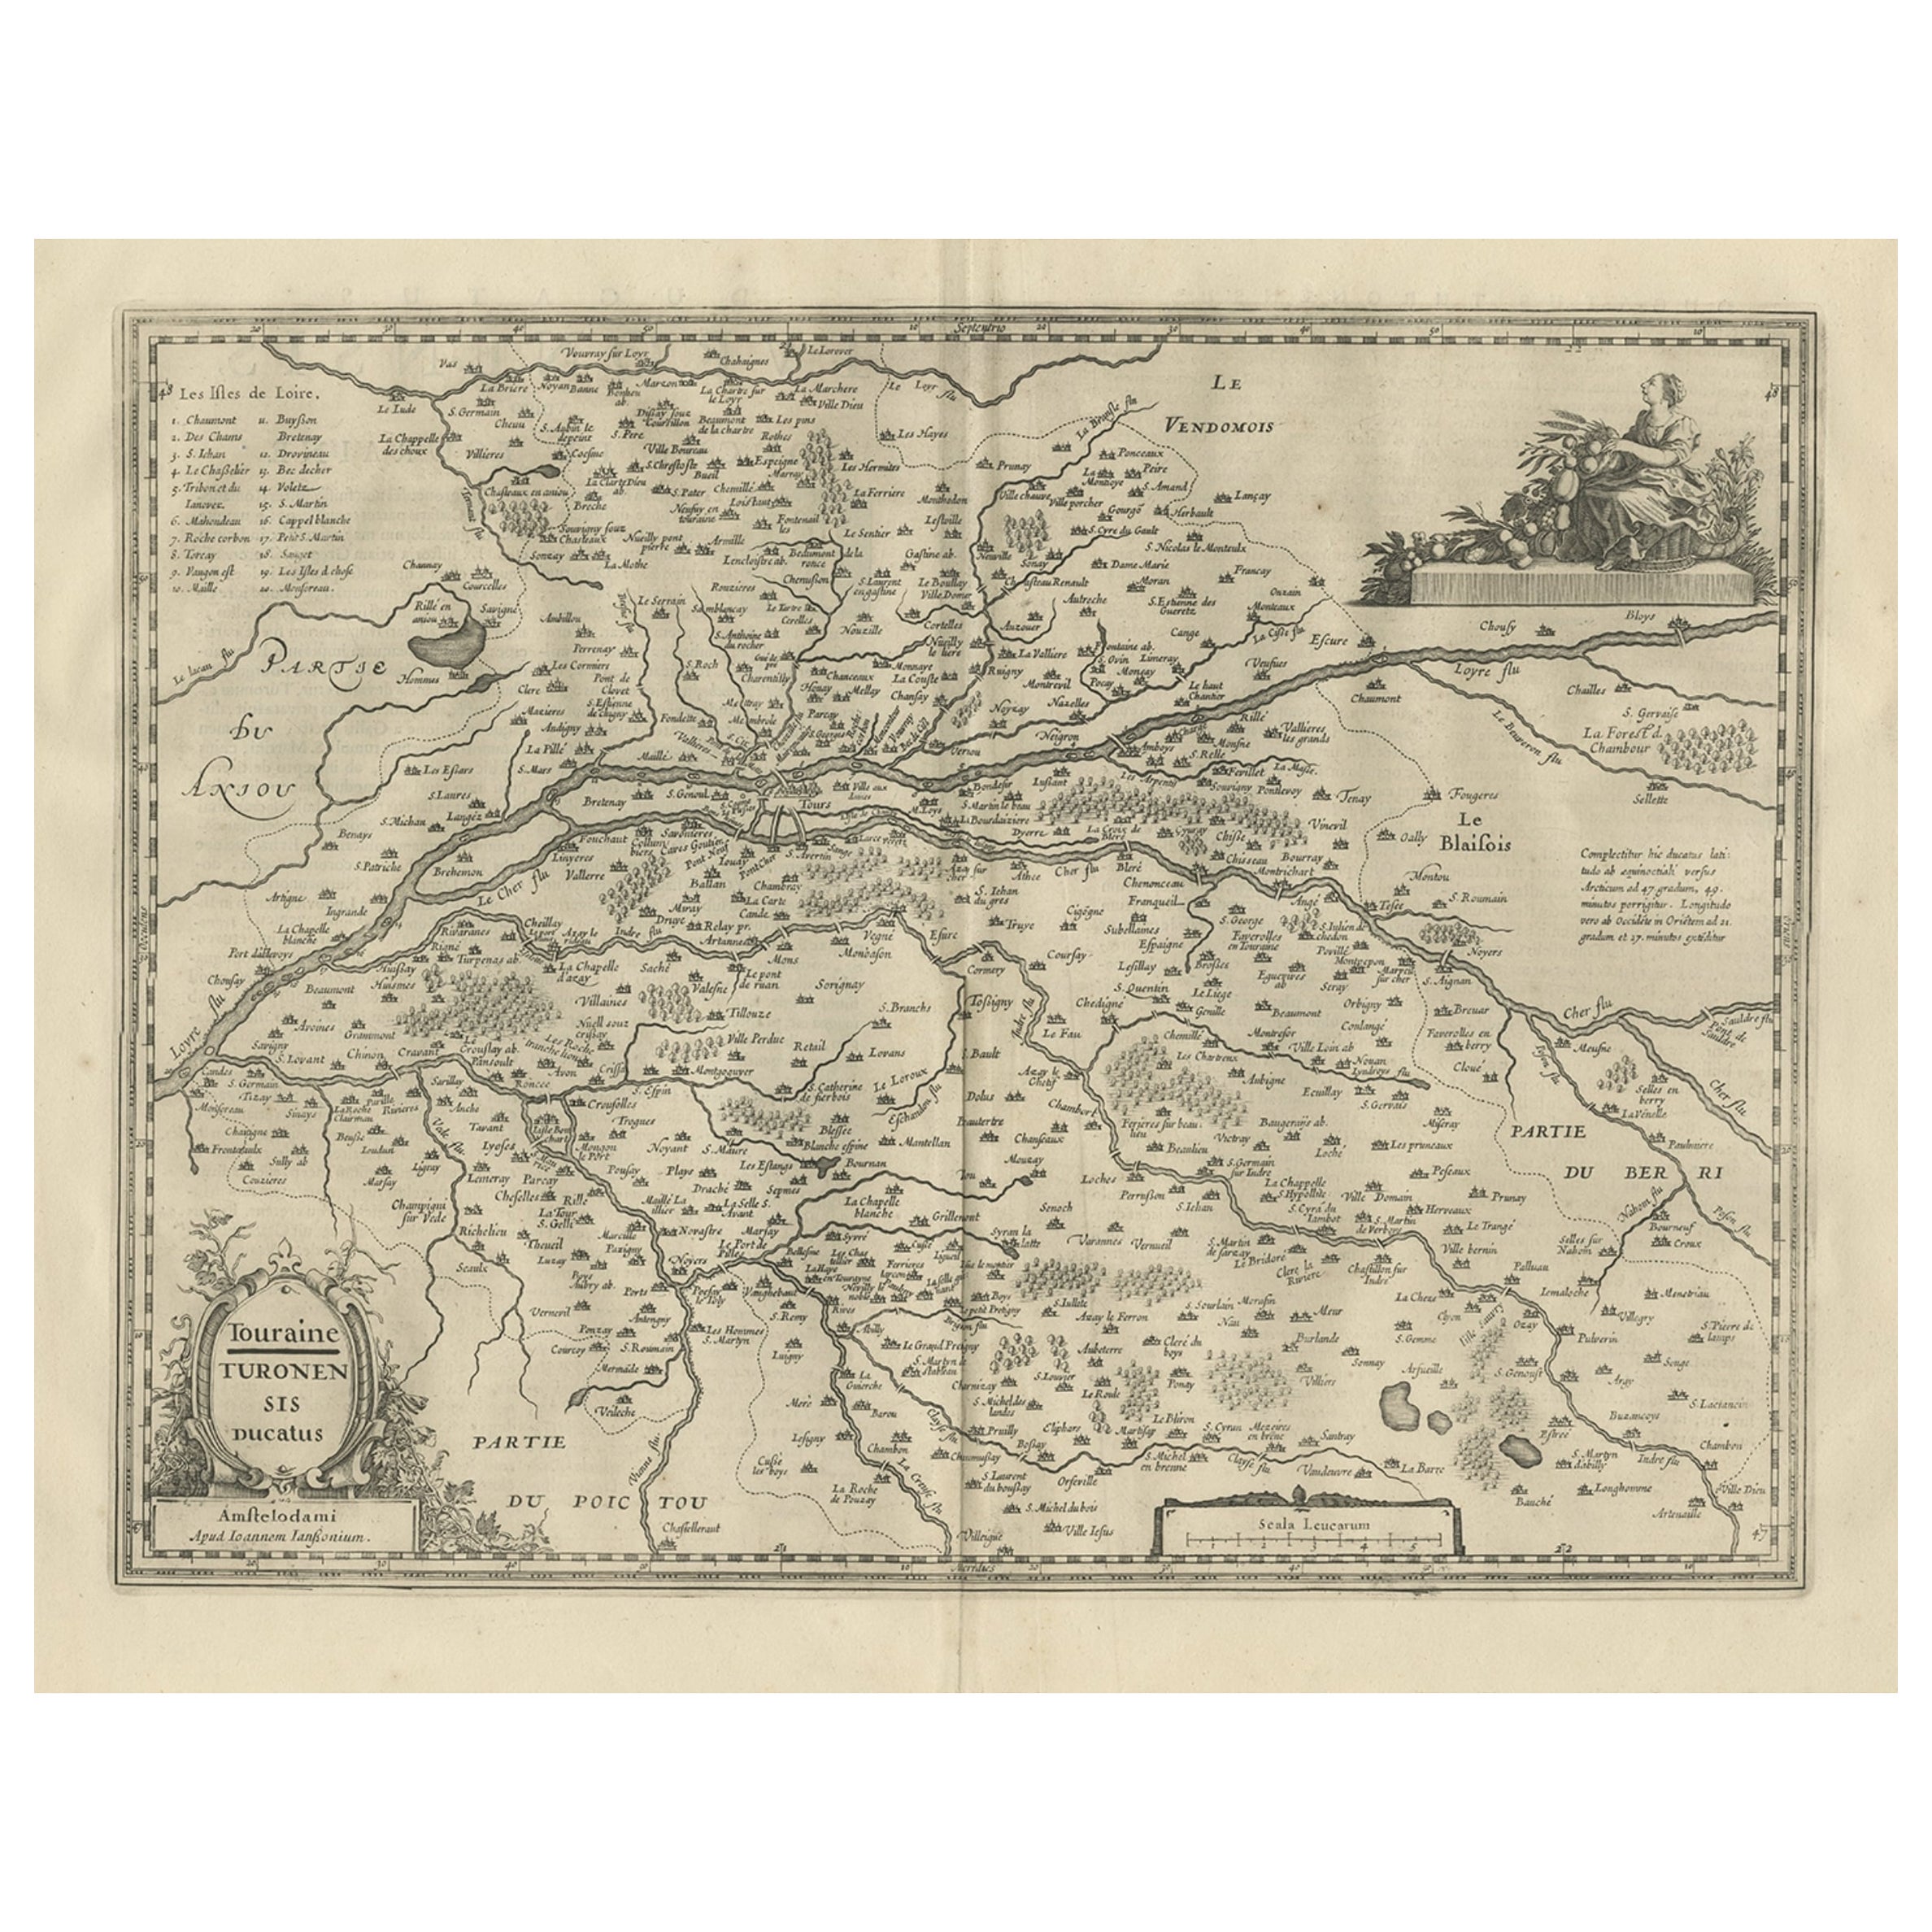 Carte ancienne de la région de Touraine, France, par Janssonius, 1657